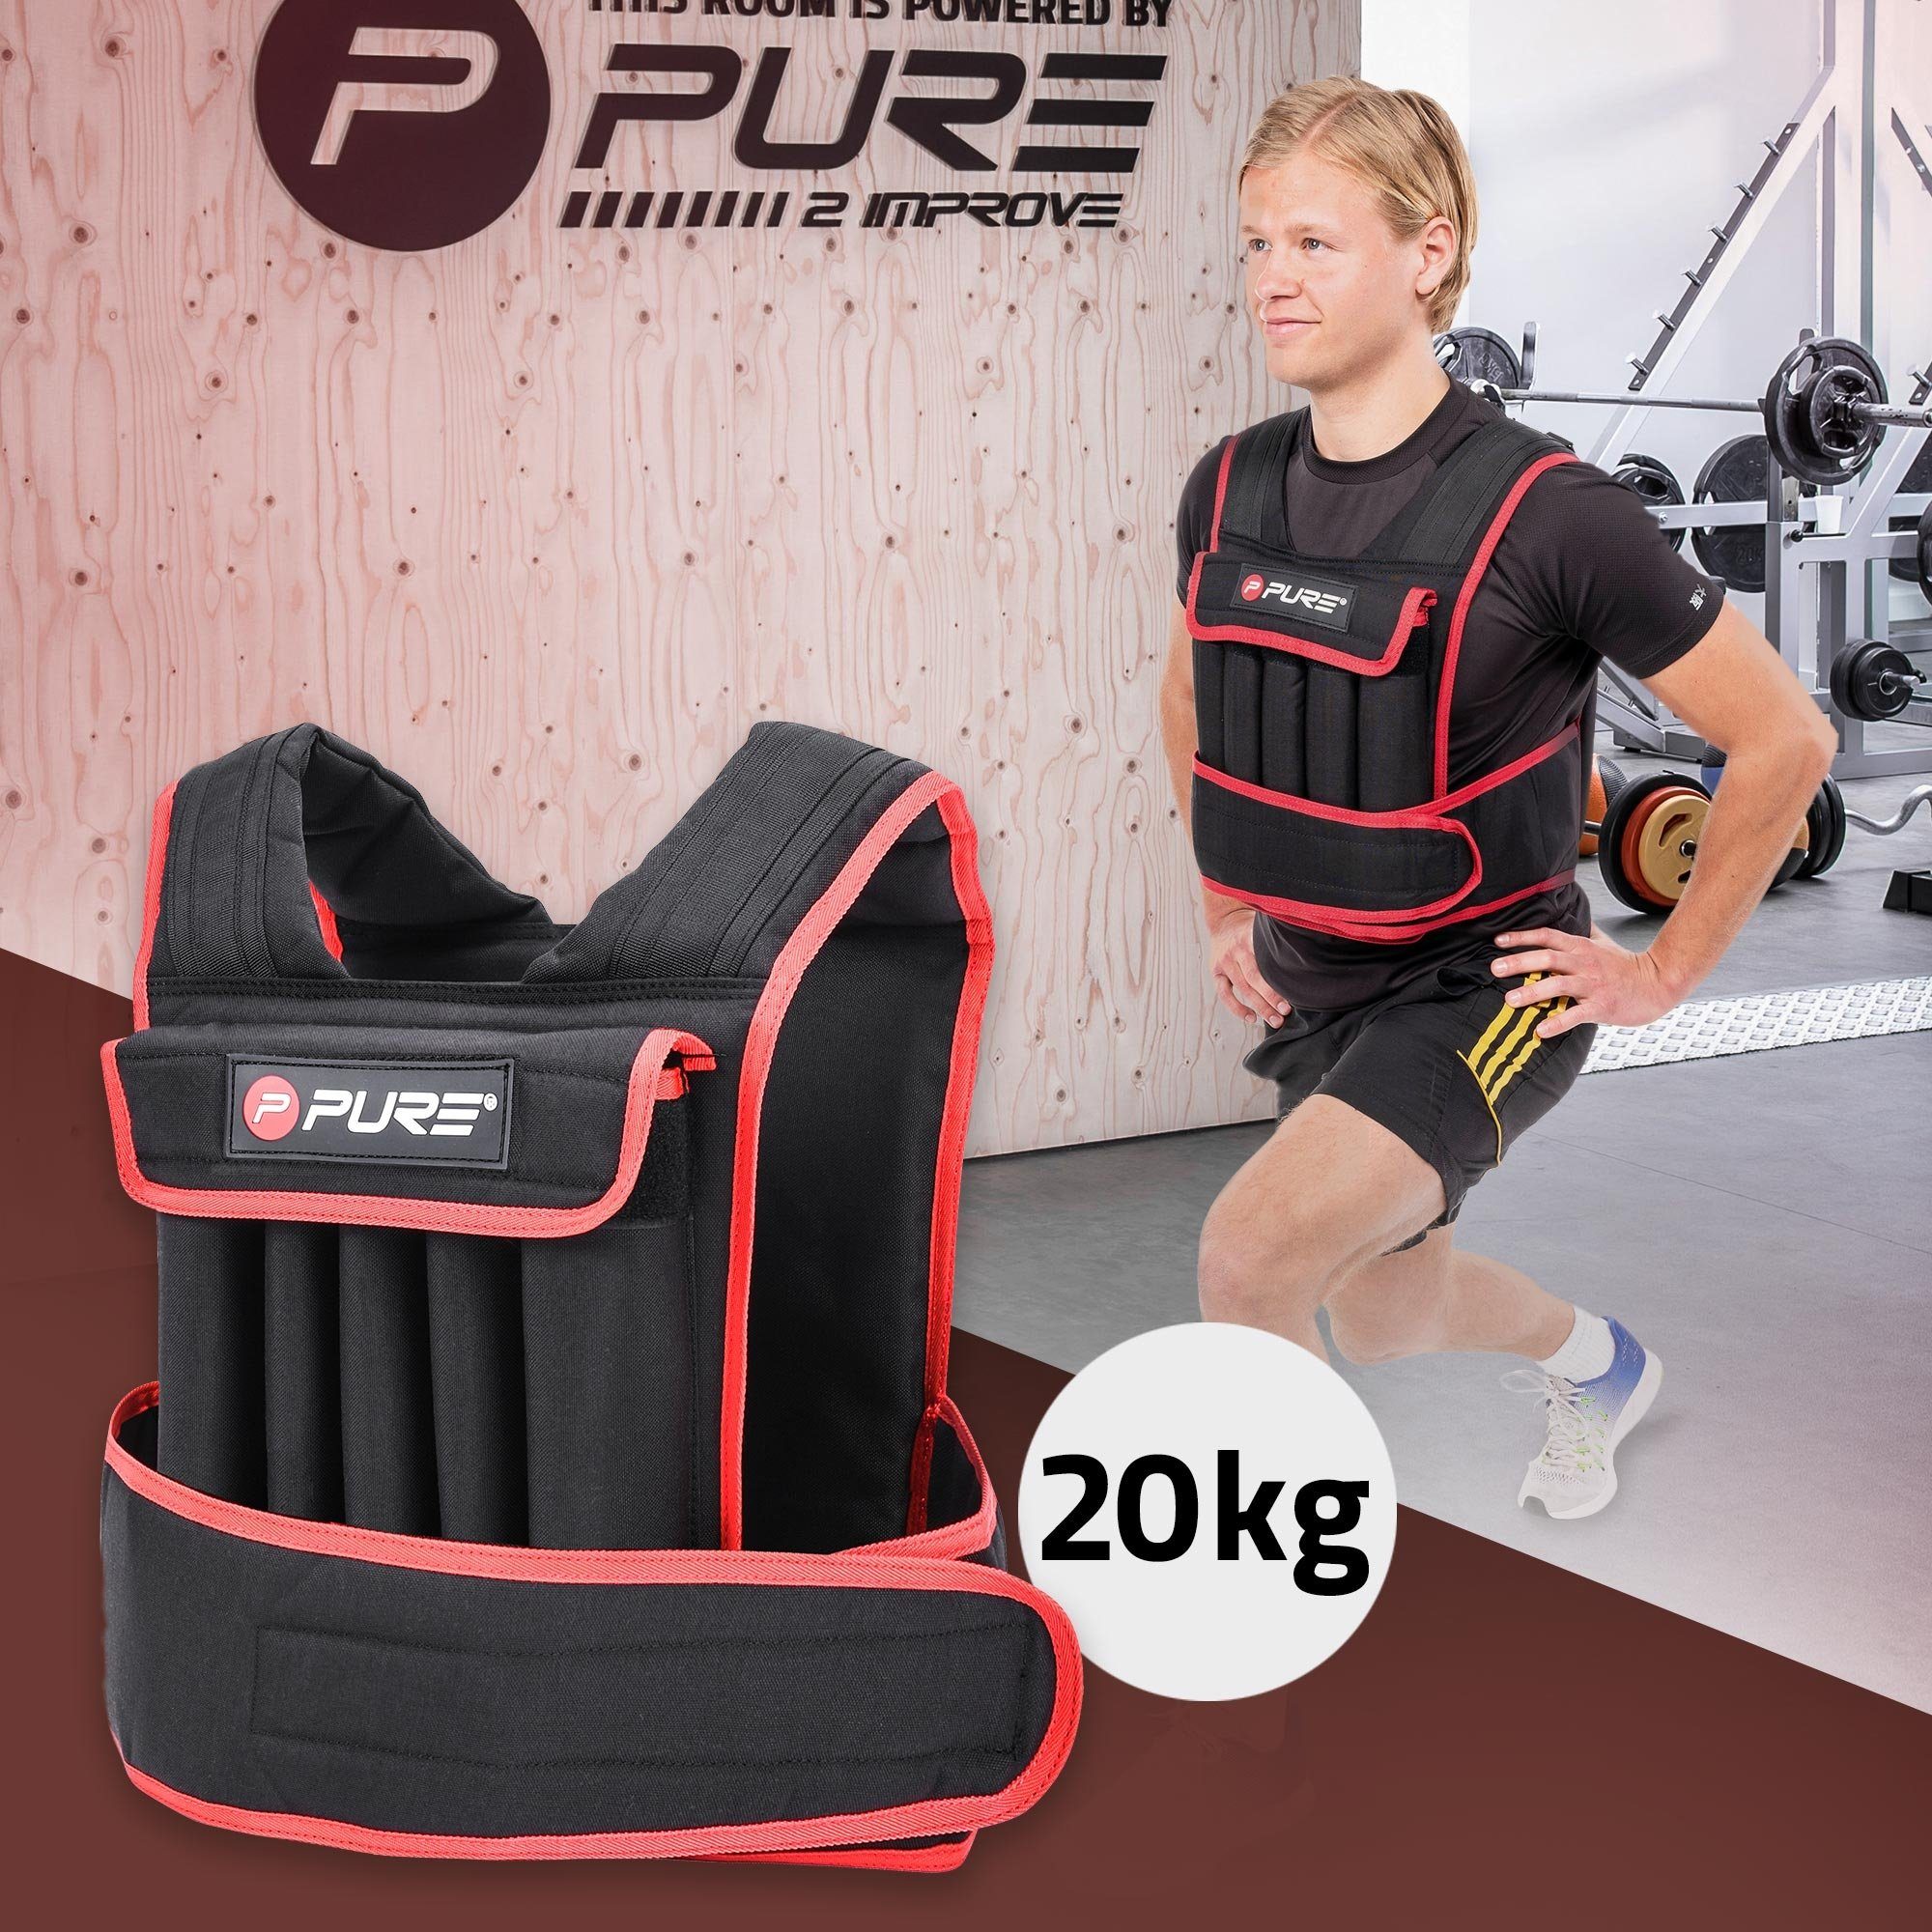 Pure 2 Improve Gewichtsweste Trainingsweste Fitnessweste Laufweste Ausdauer-Training Muskelaufbau, 20kg Schwarz-Rot individuell einstellbar herausnehmbaren Gewichten